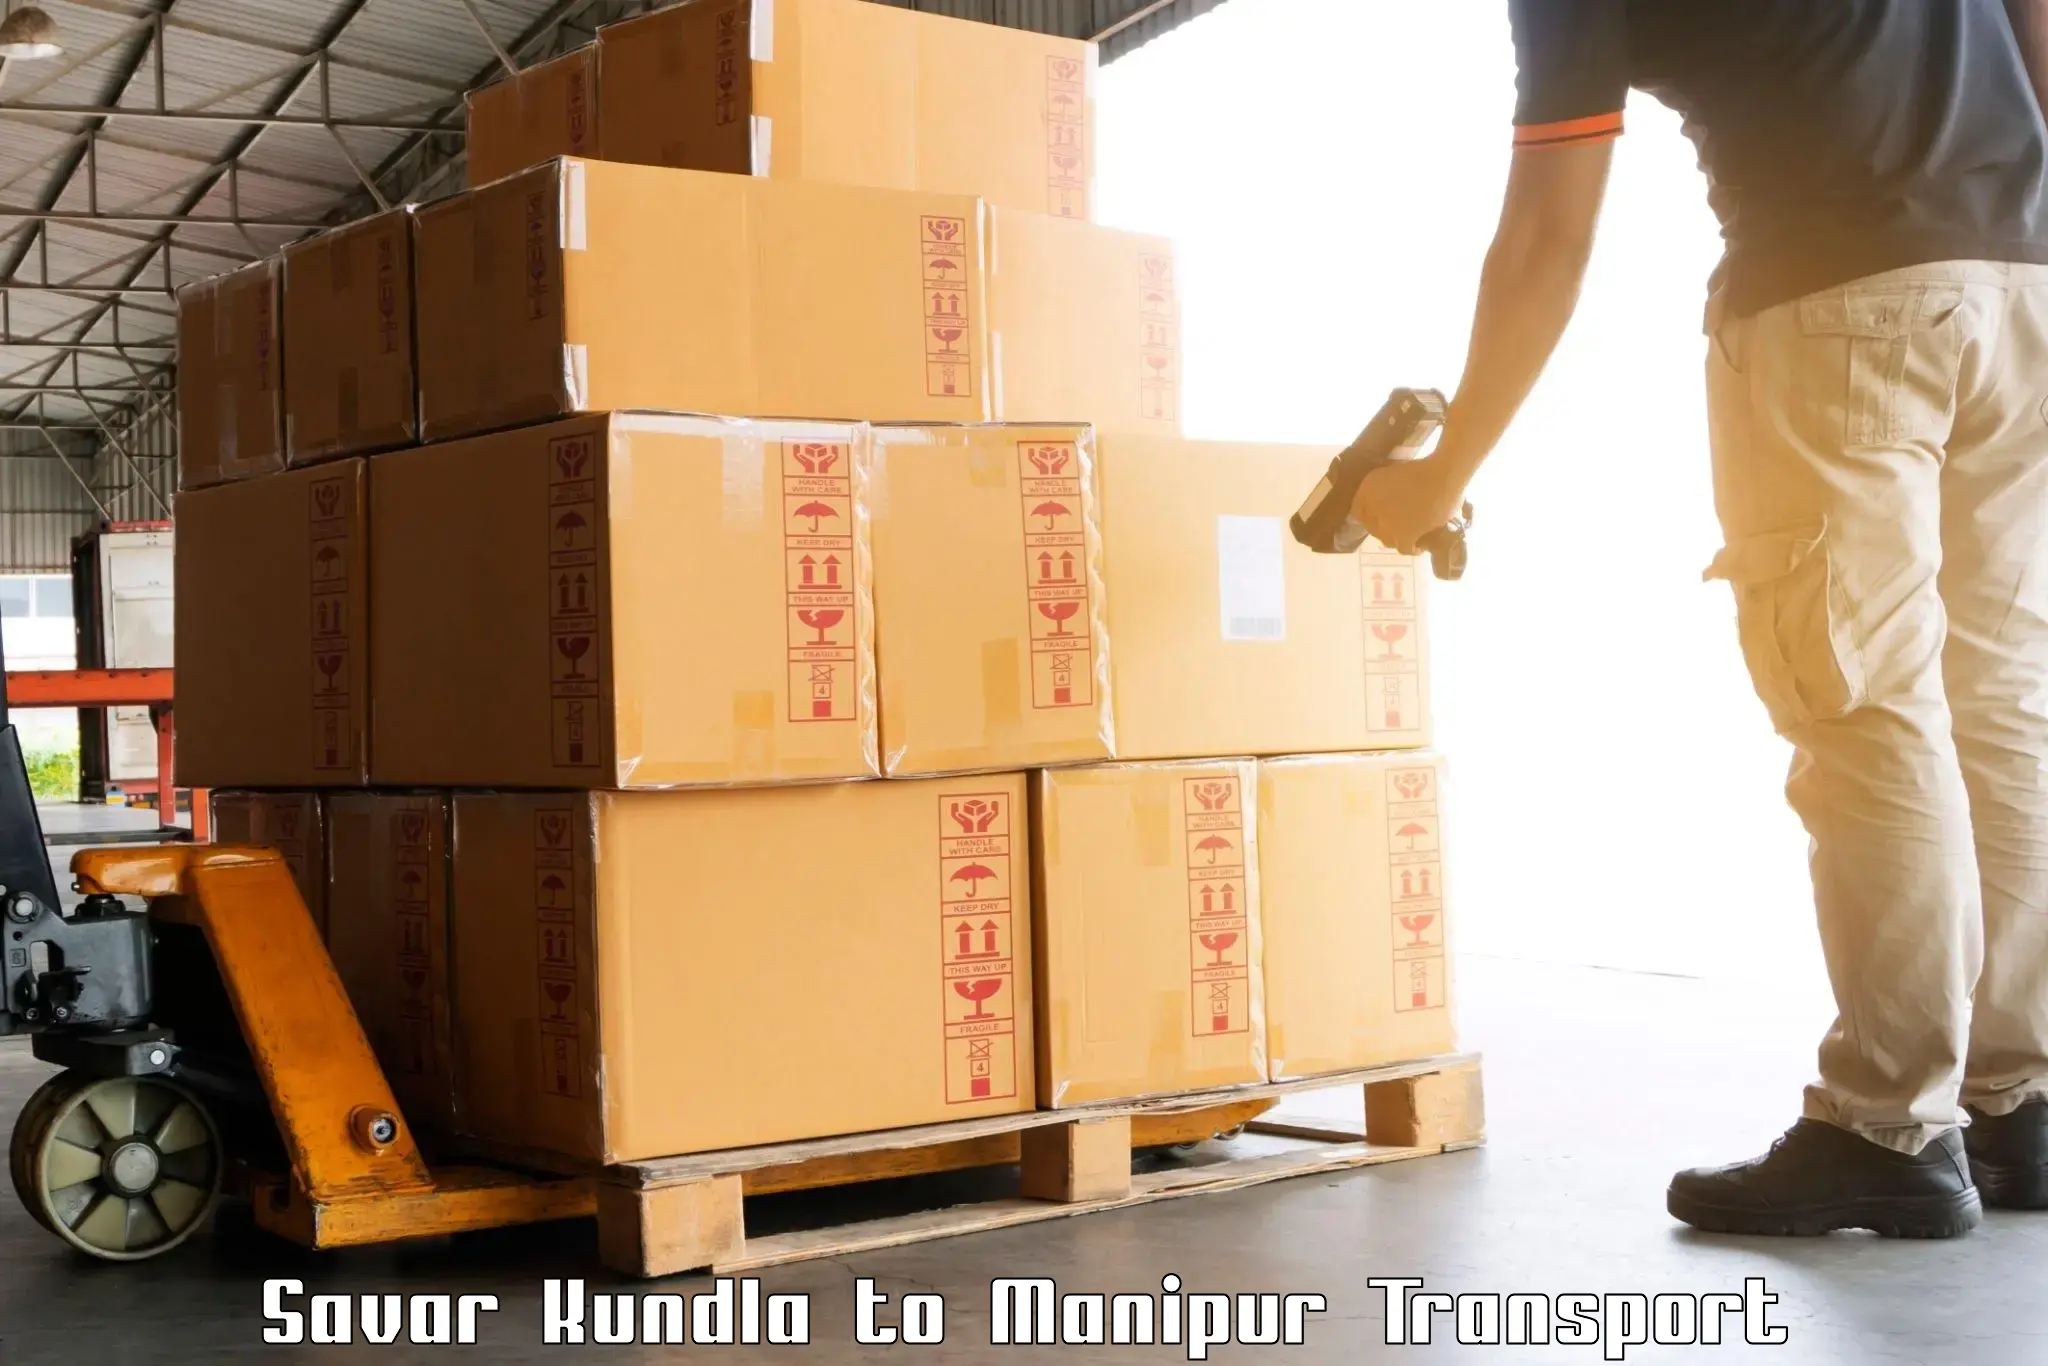 Delivery service Savar Kundla to Manipur